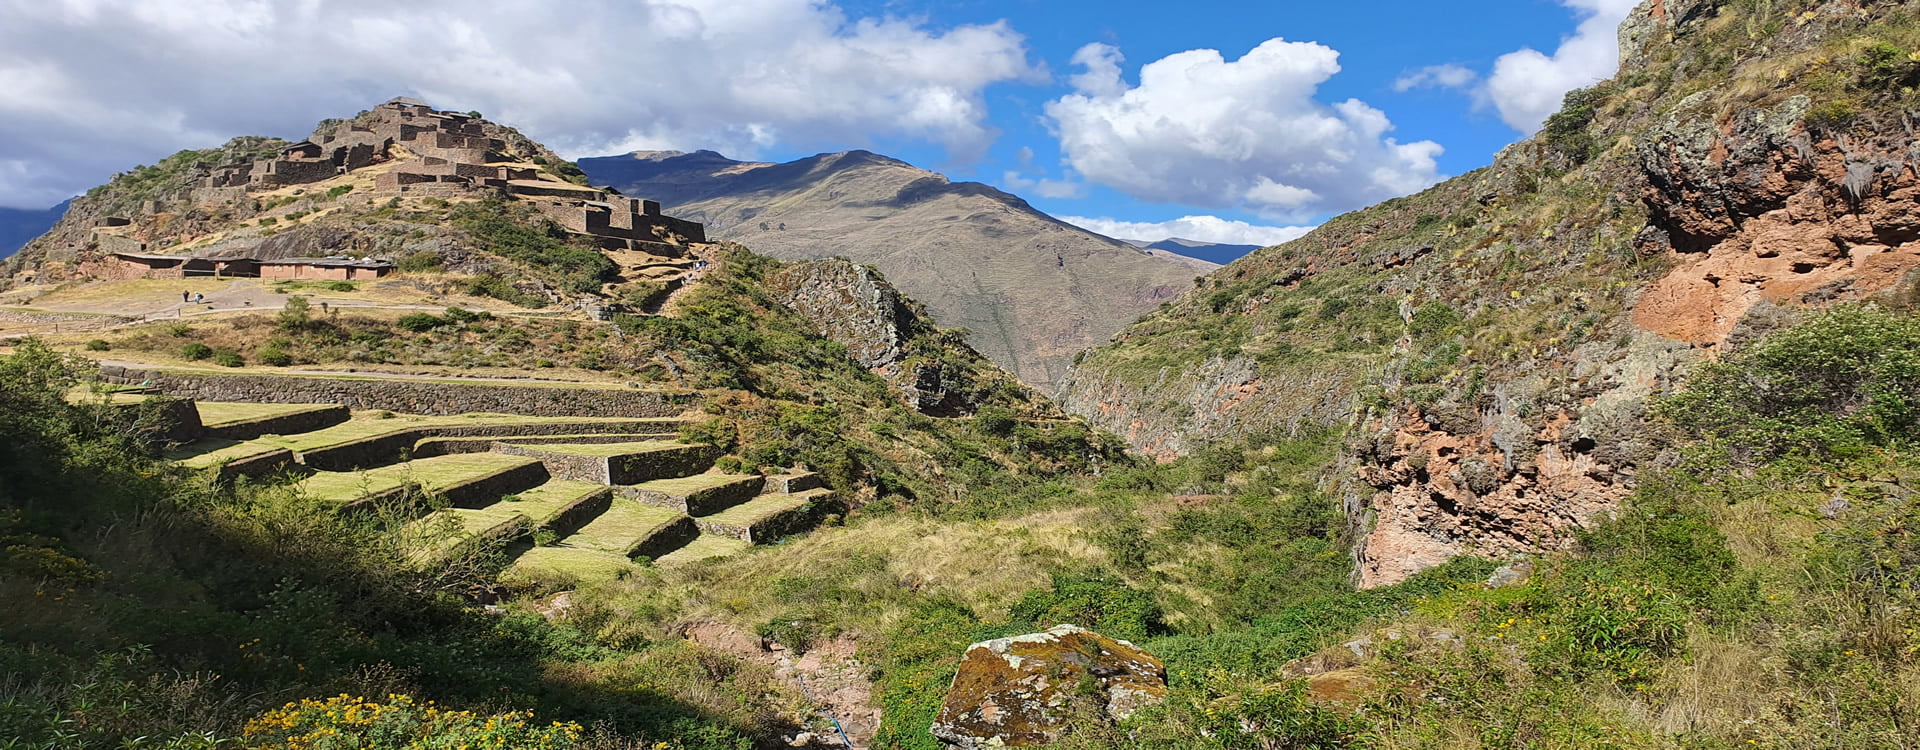 pisac valle sagrado delos incas